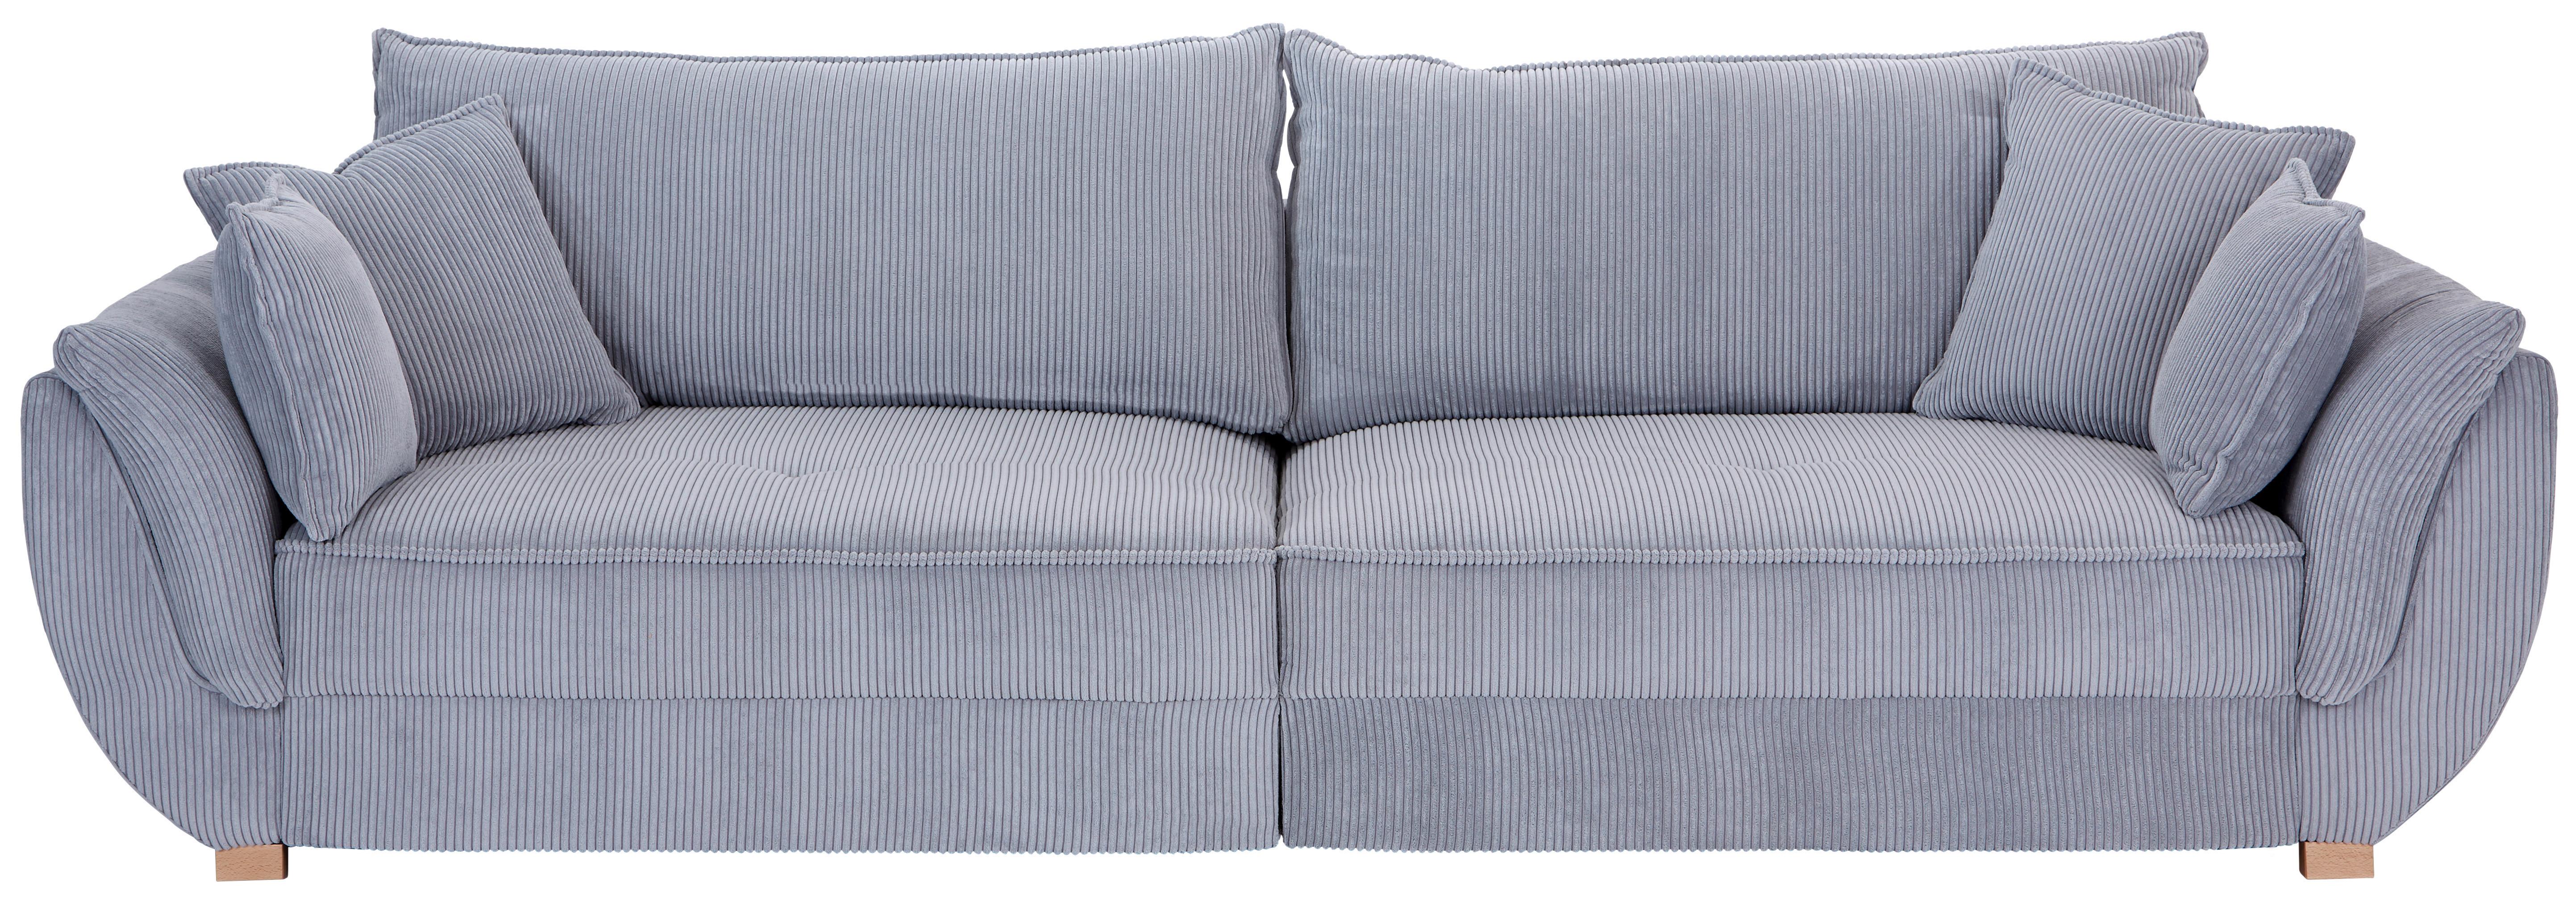 Big Sofa mit Schlaffunktion Guarda B: 301 cm Hellgrau